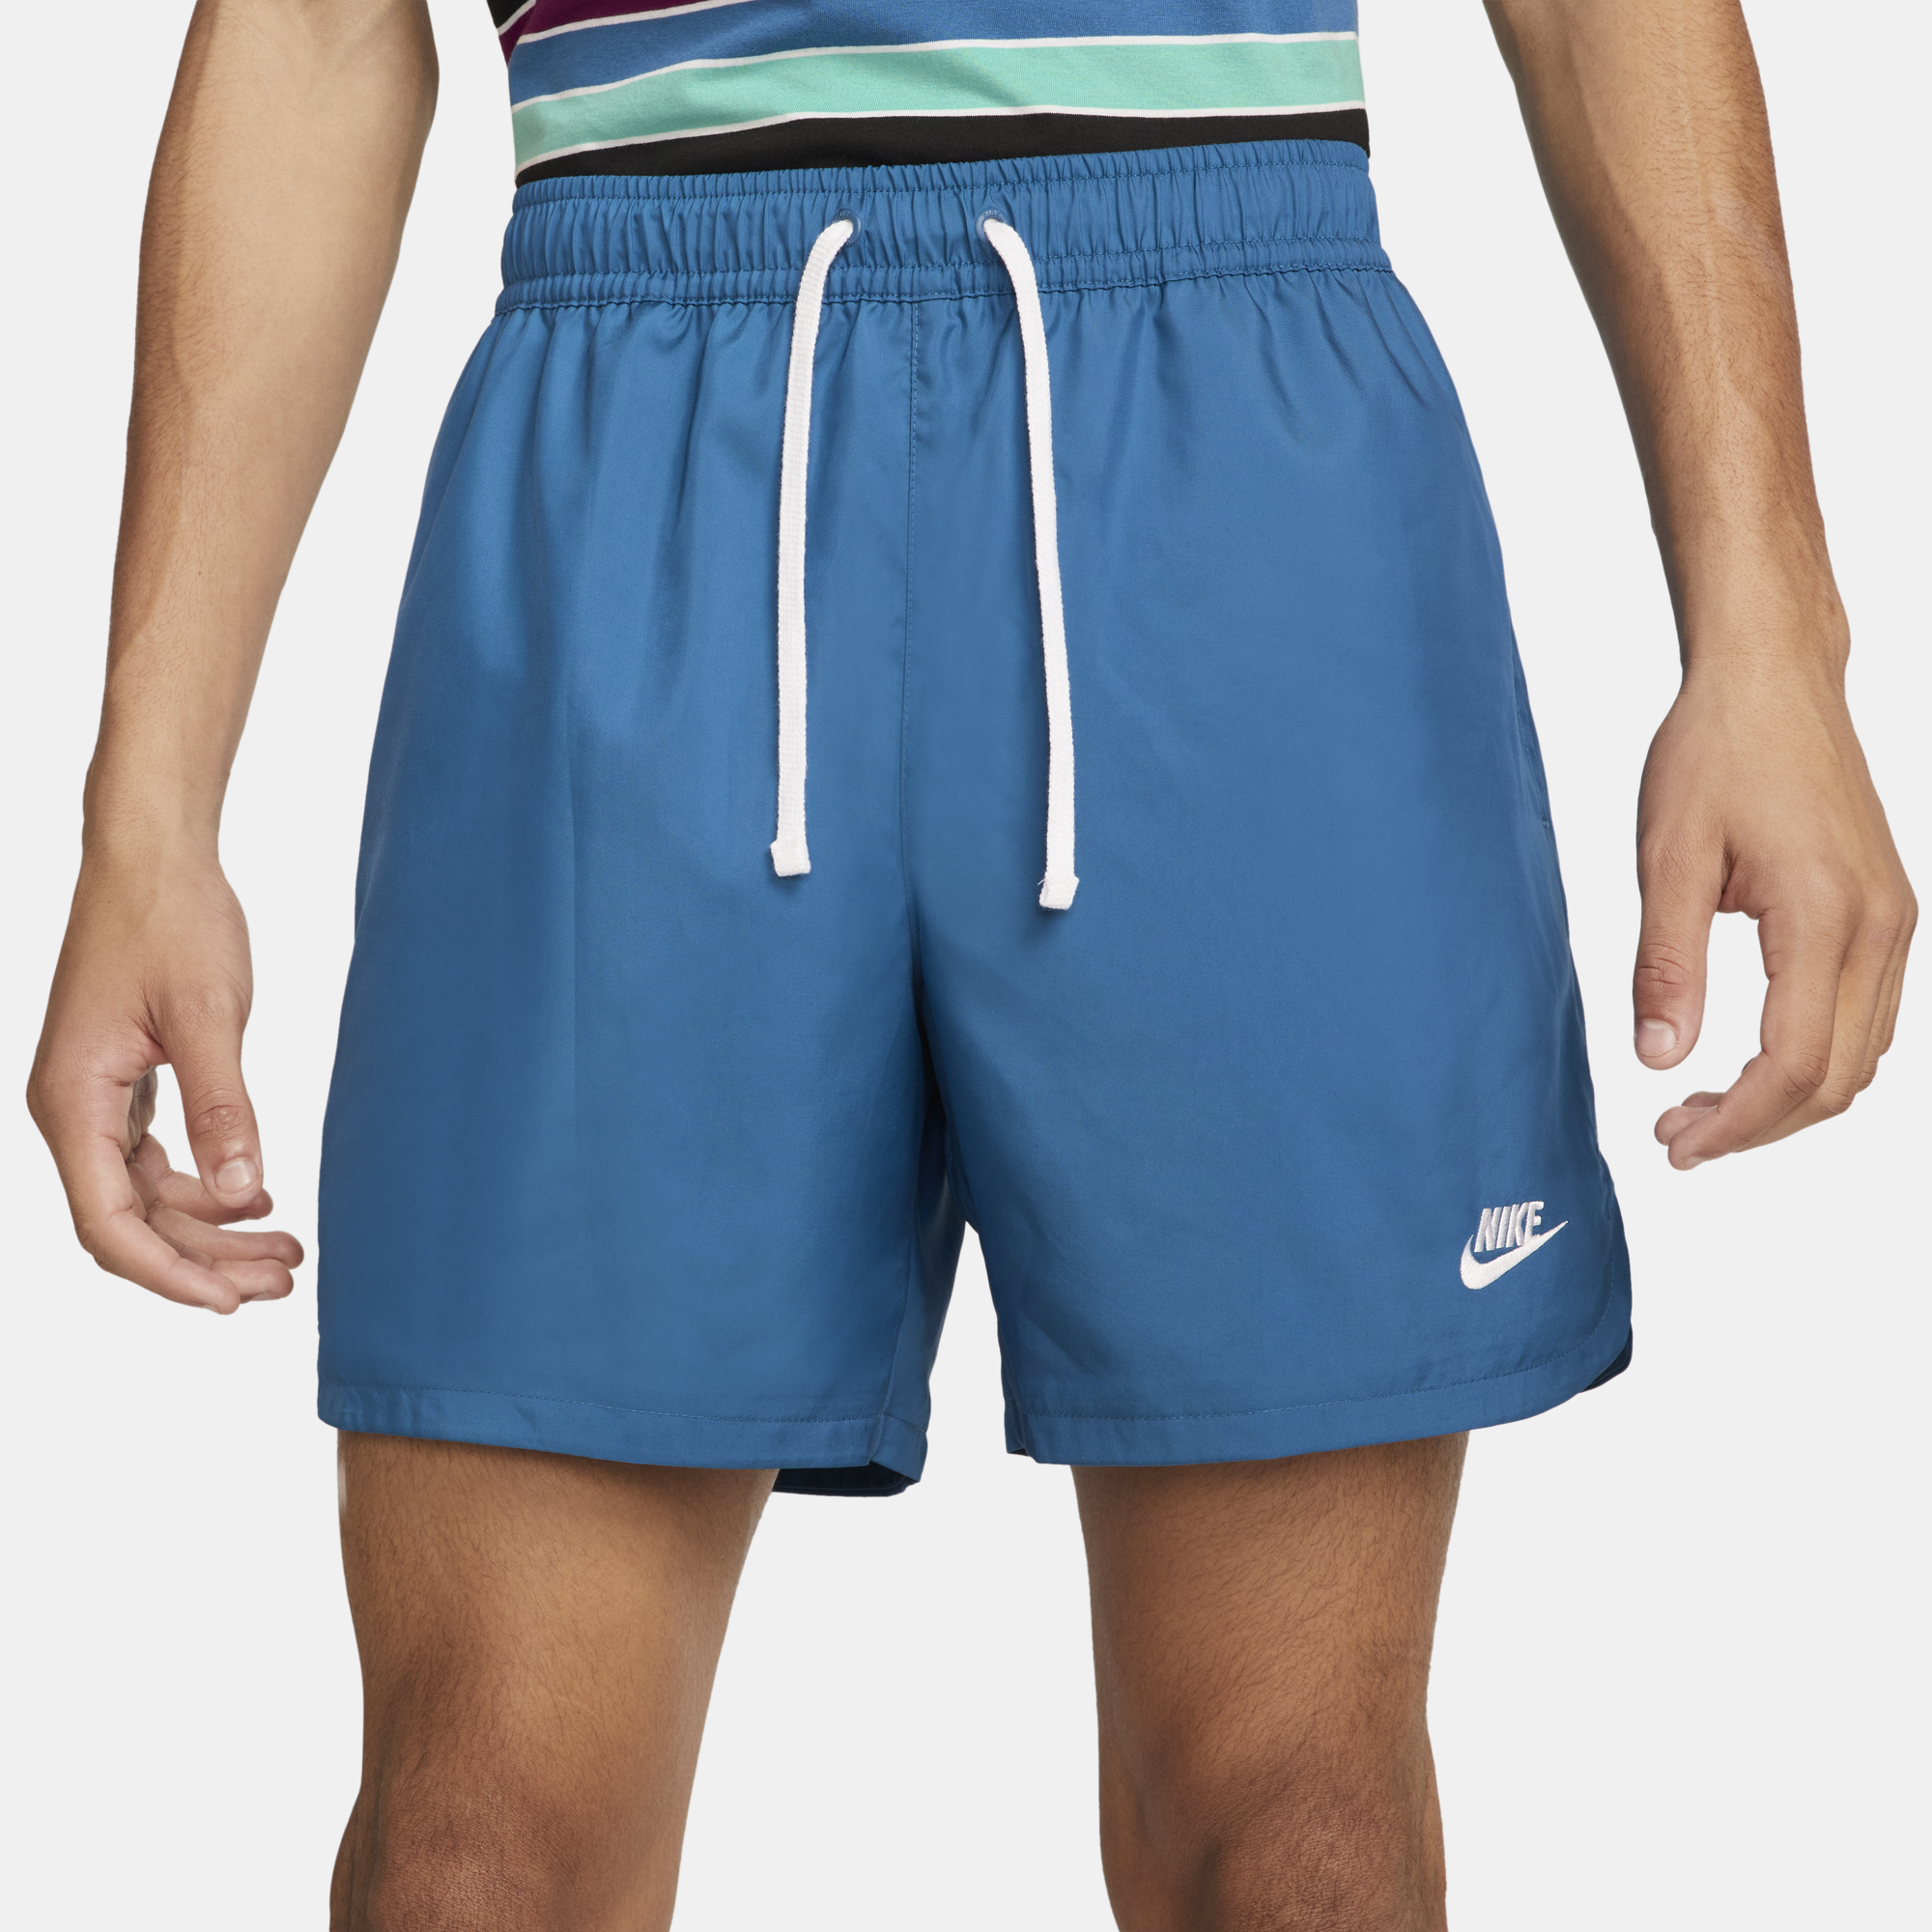 VANS VAULT, Midnight blue Men's Shorts & Bermuda